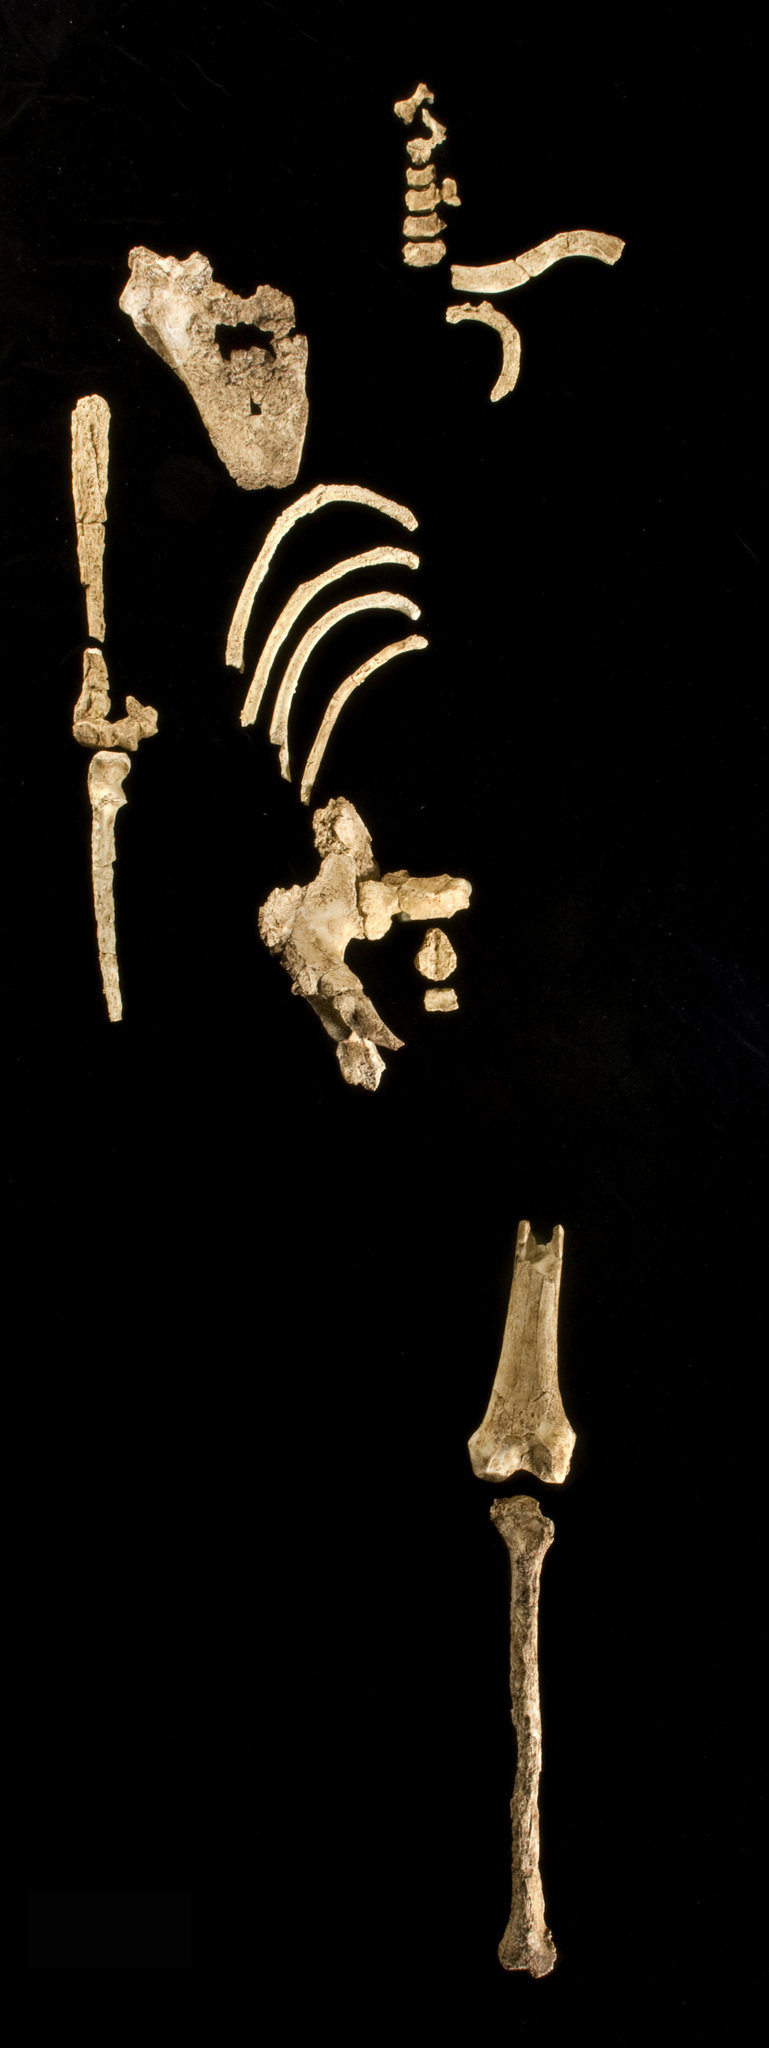 Στο φως σκελετός πρώιμου προγόνου του ανθρώπου, ηλικίας 3,6 εκατ. ετών